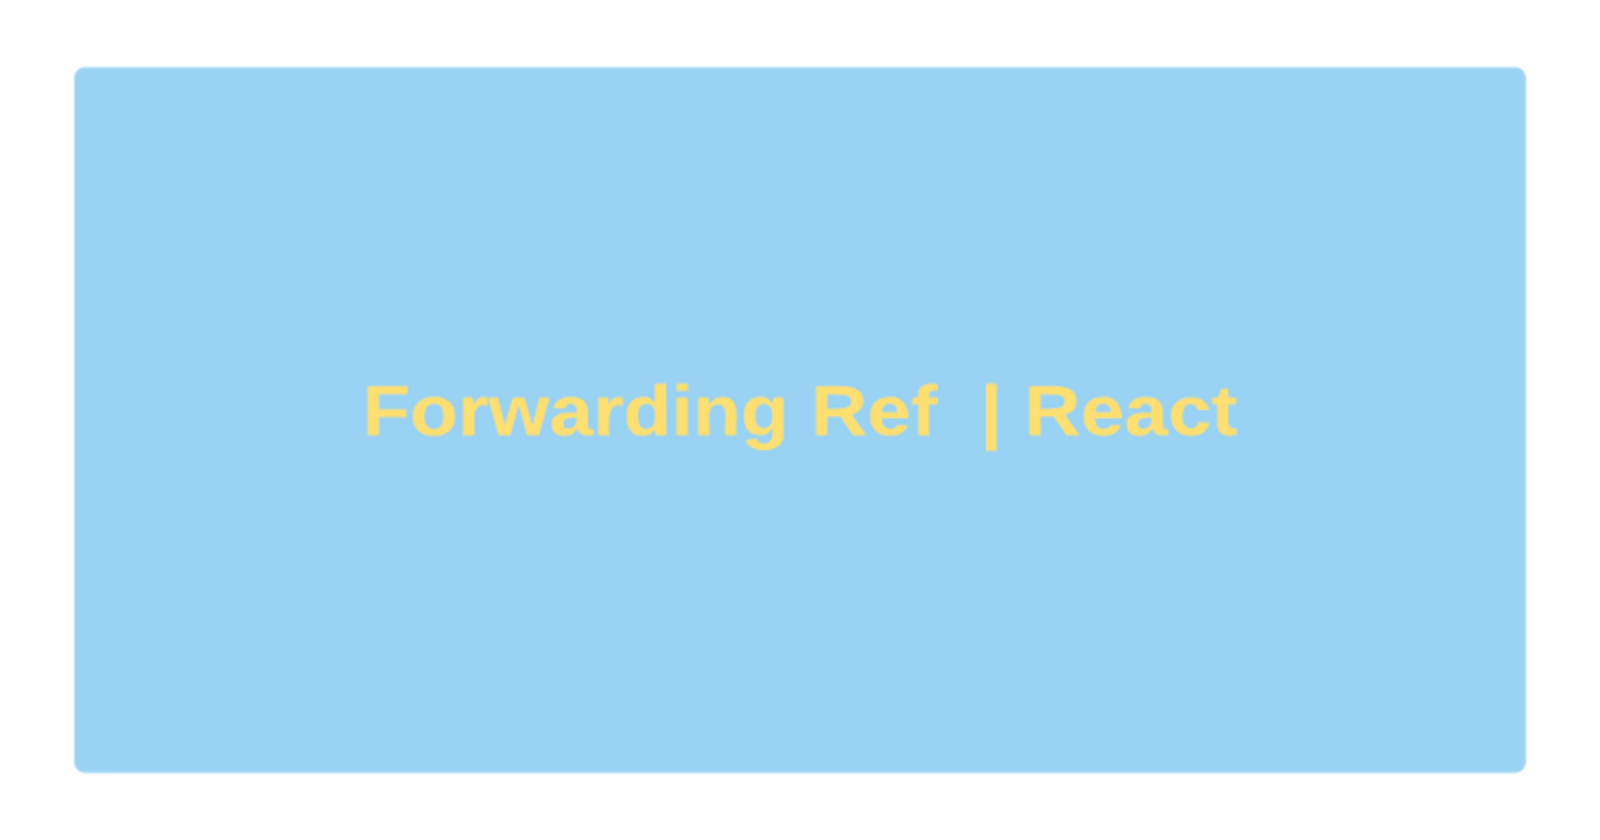 Understanding Forward Ref in React